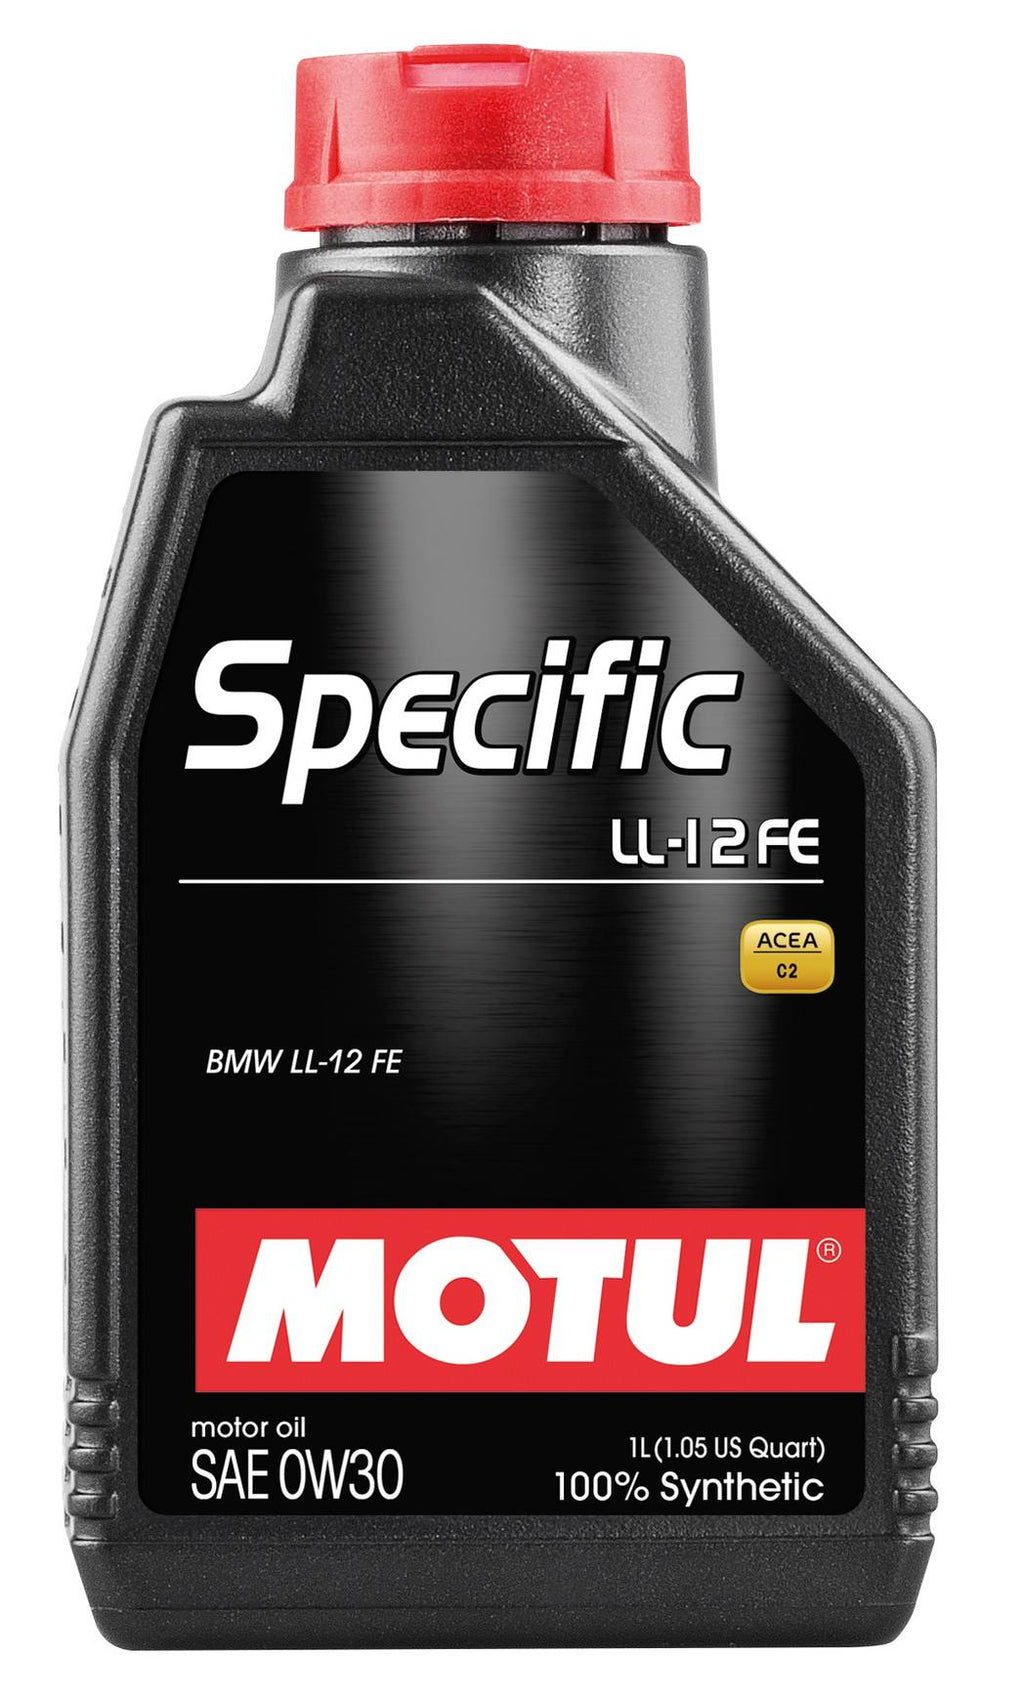 Motul - SPECIFIC BMW LL-12 FE Synthetic Motor Oil - 0W-30